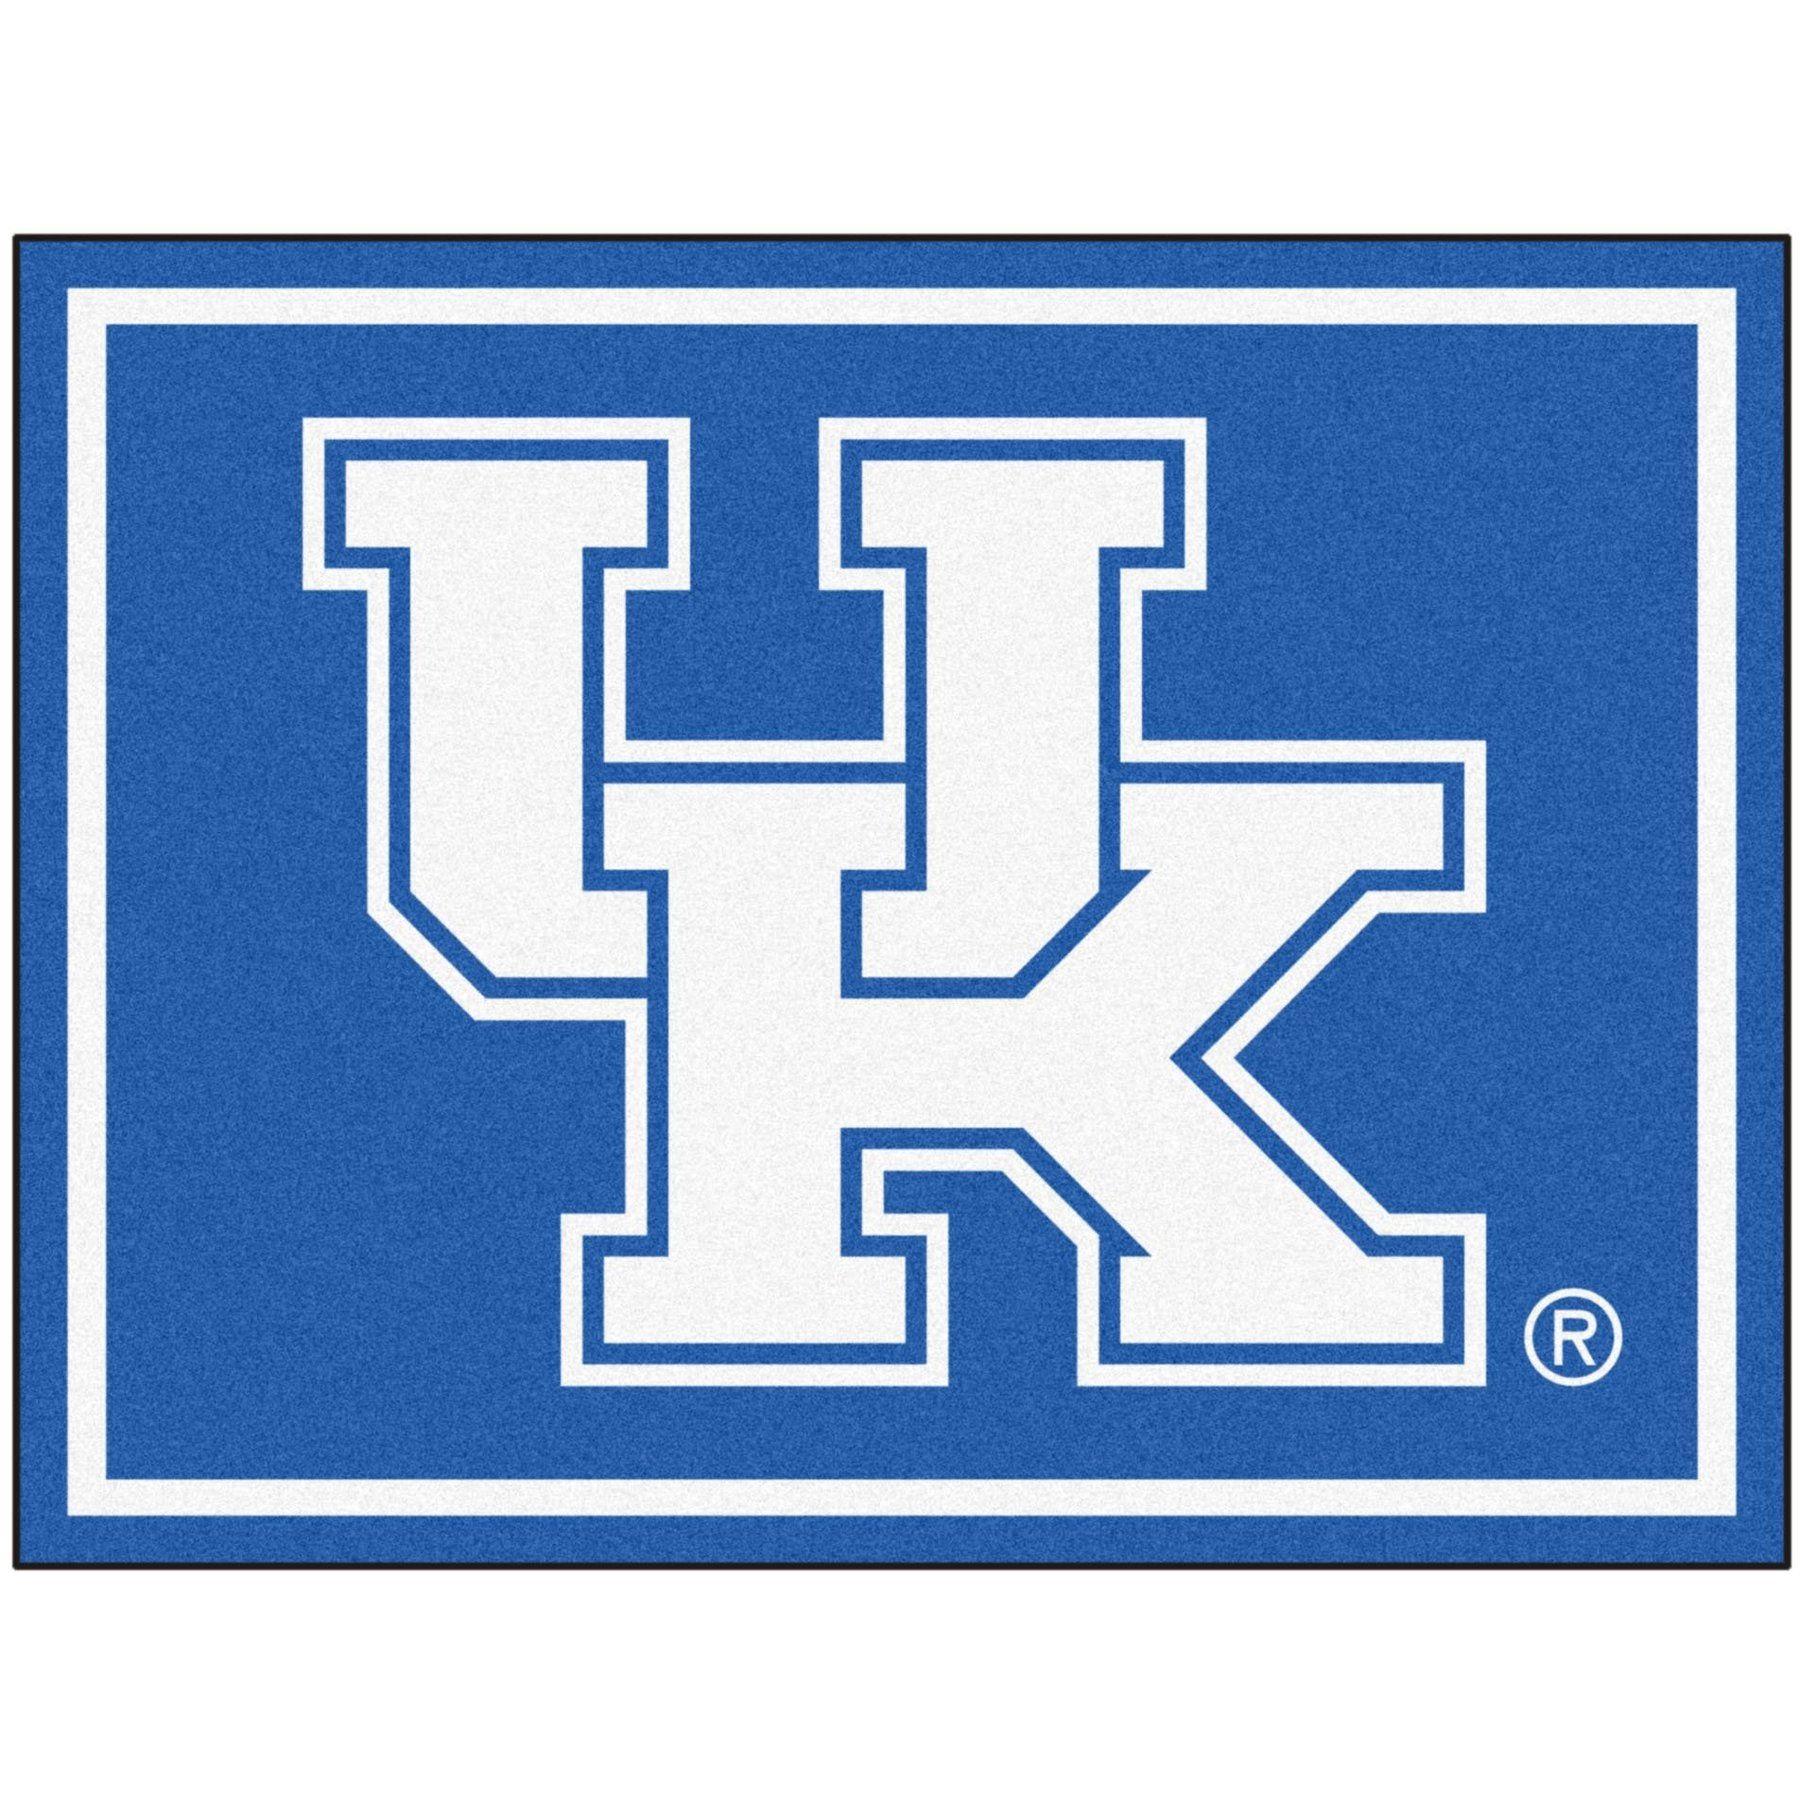 University of Kentucky Logo - University of Kentucky Giant Logo Area Rug